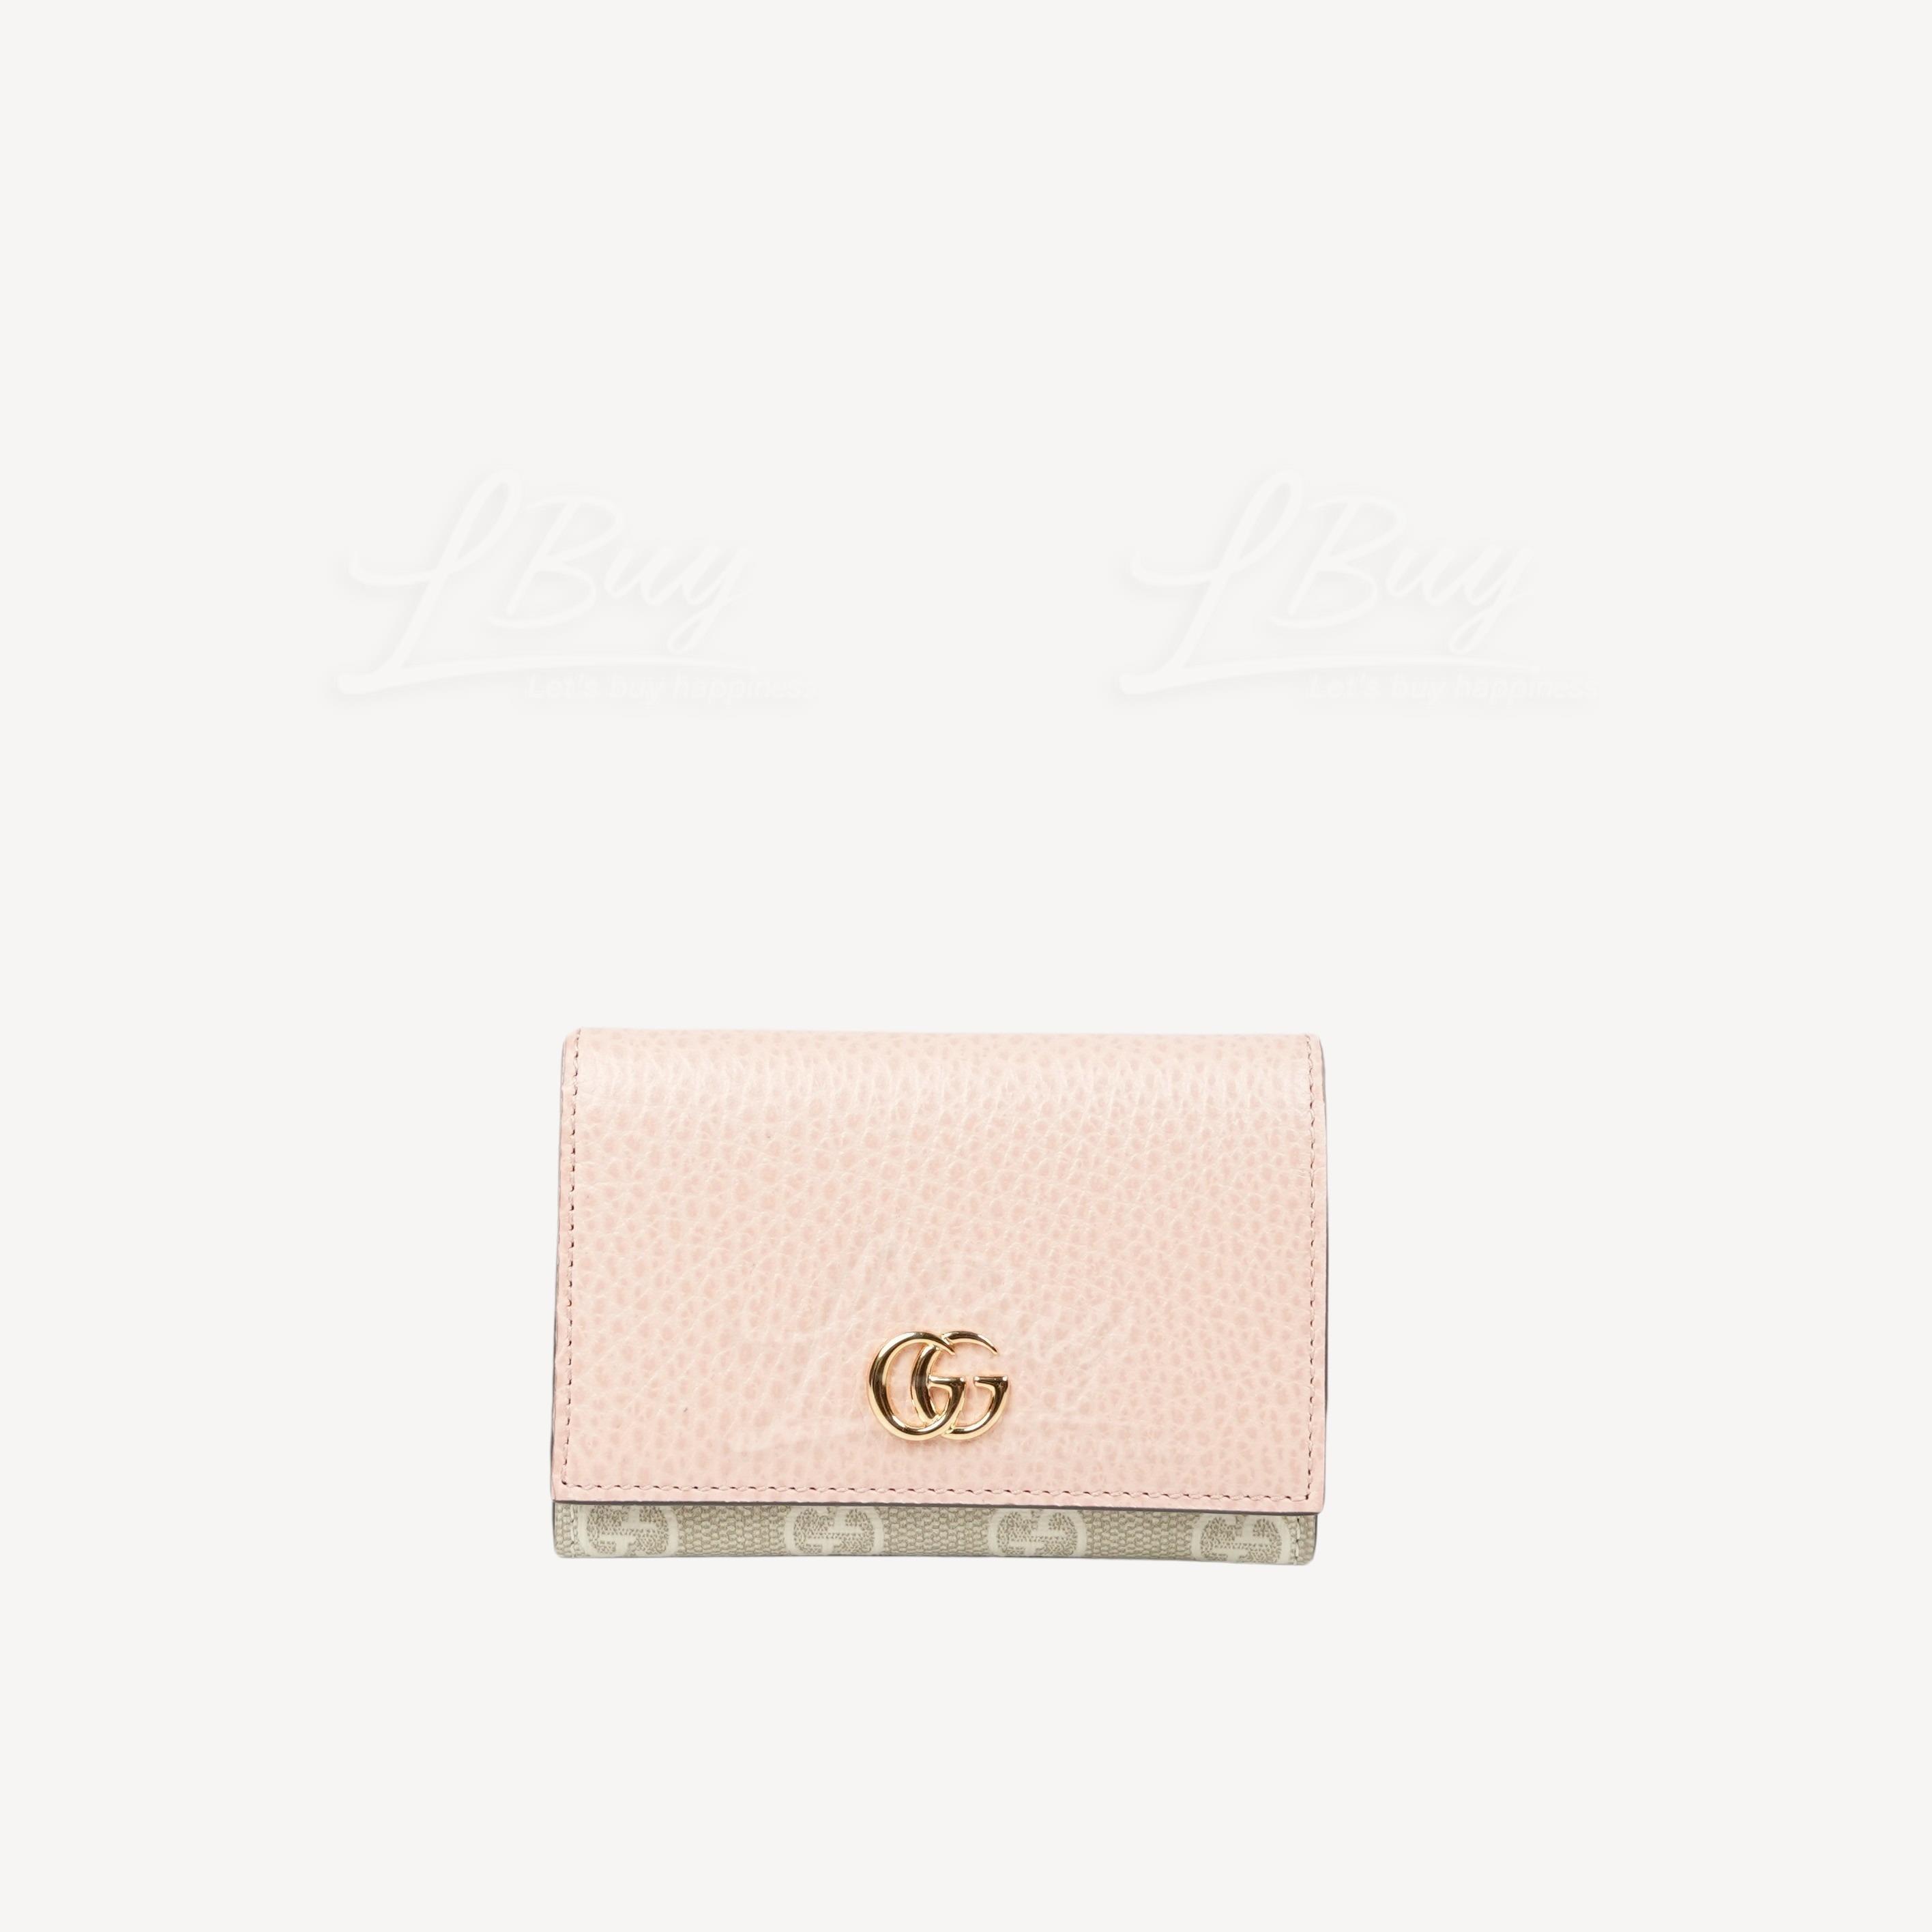 Gucci GG Logo MARMONT皮革卡片包 淺粉色 739525